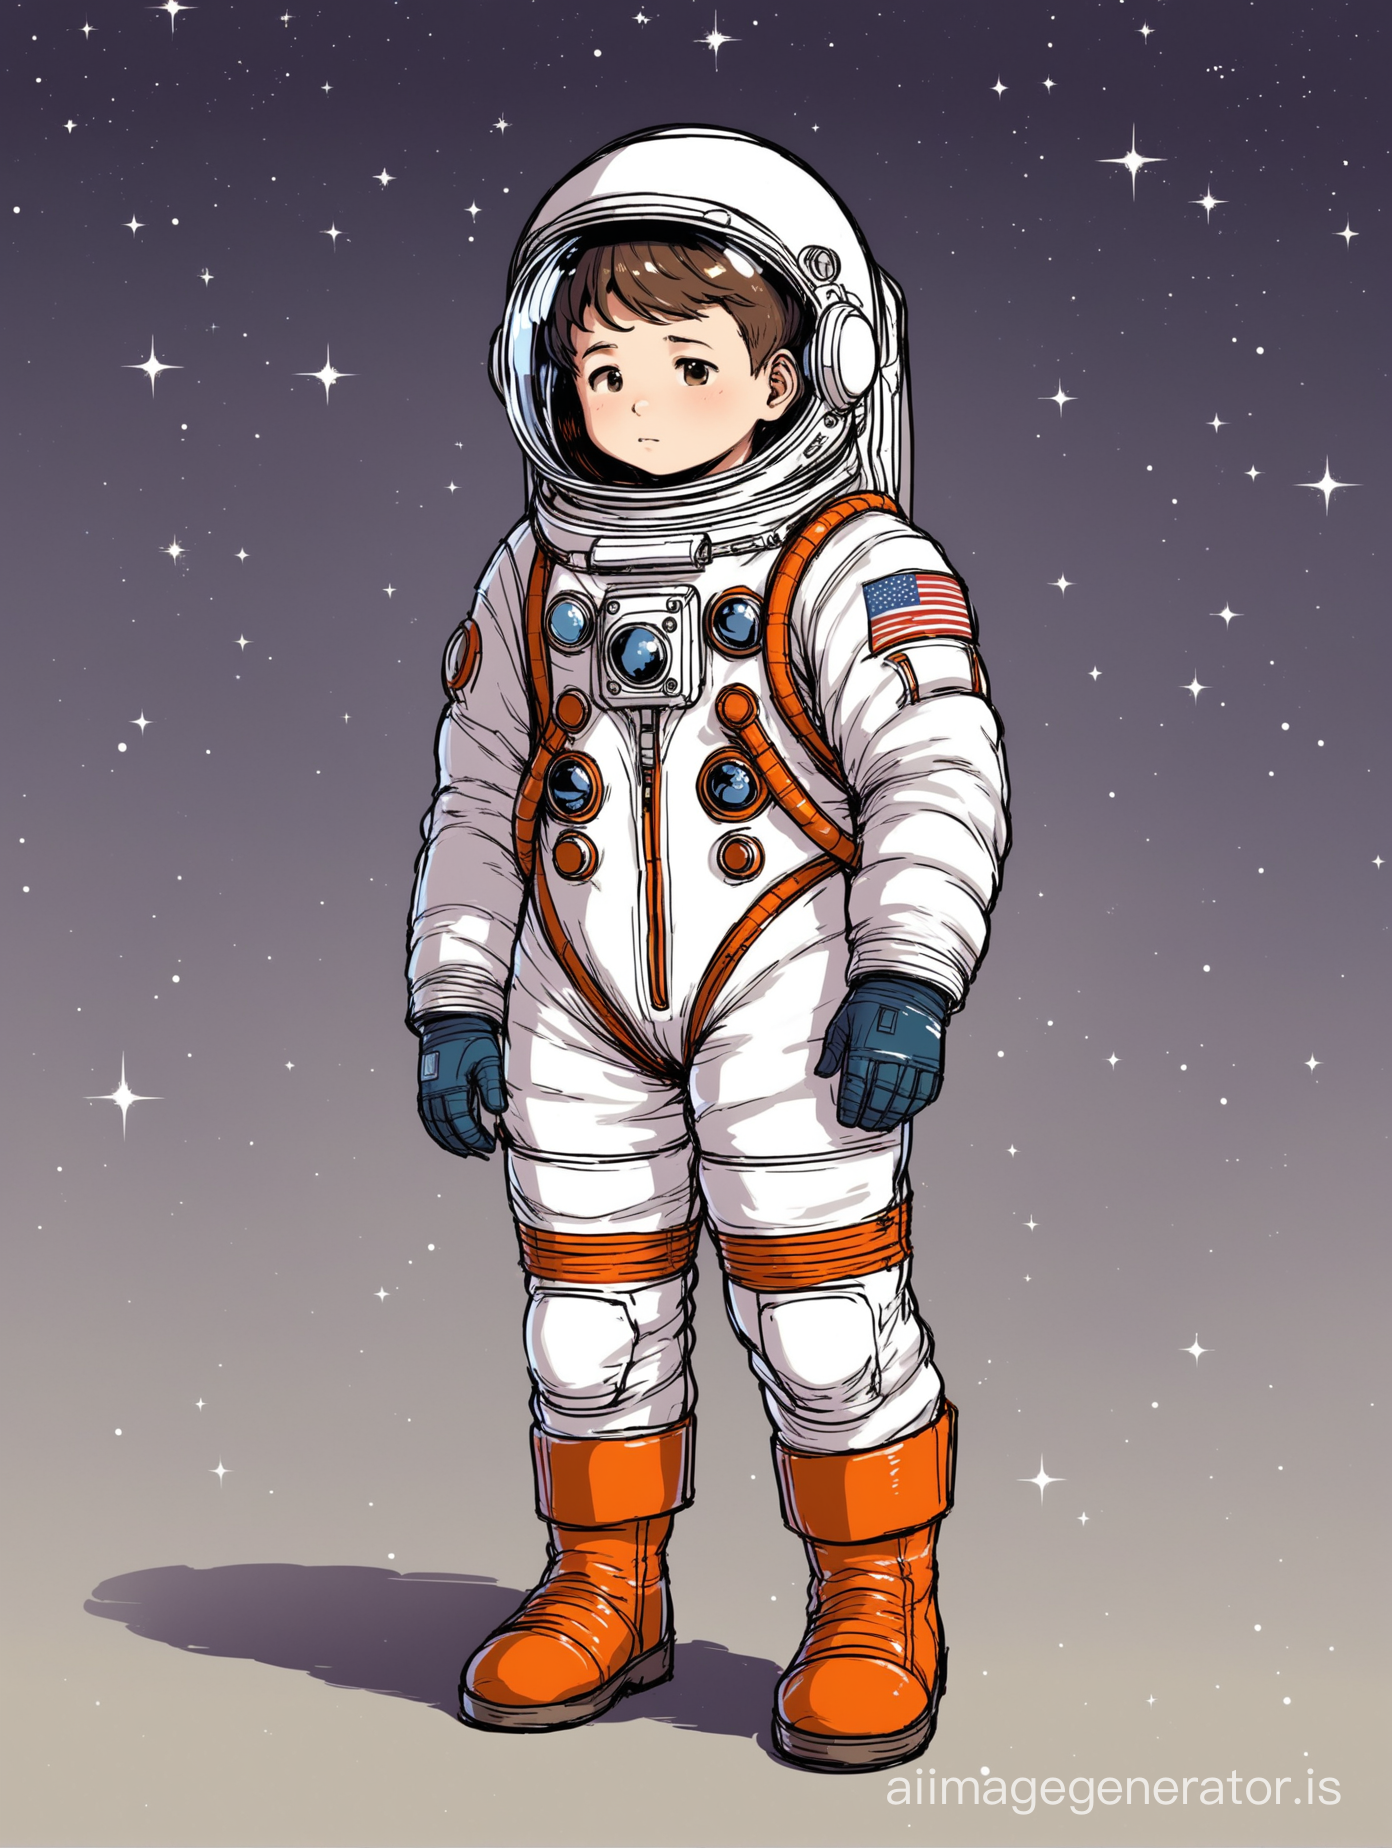 Космонавт подросток, шлем великоват на него, и космический костюм не по размеру, ботинки великоваты